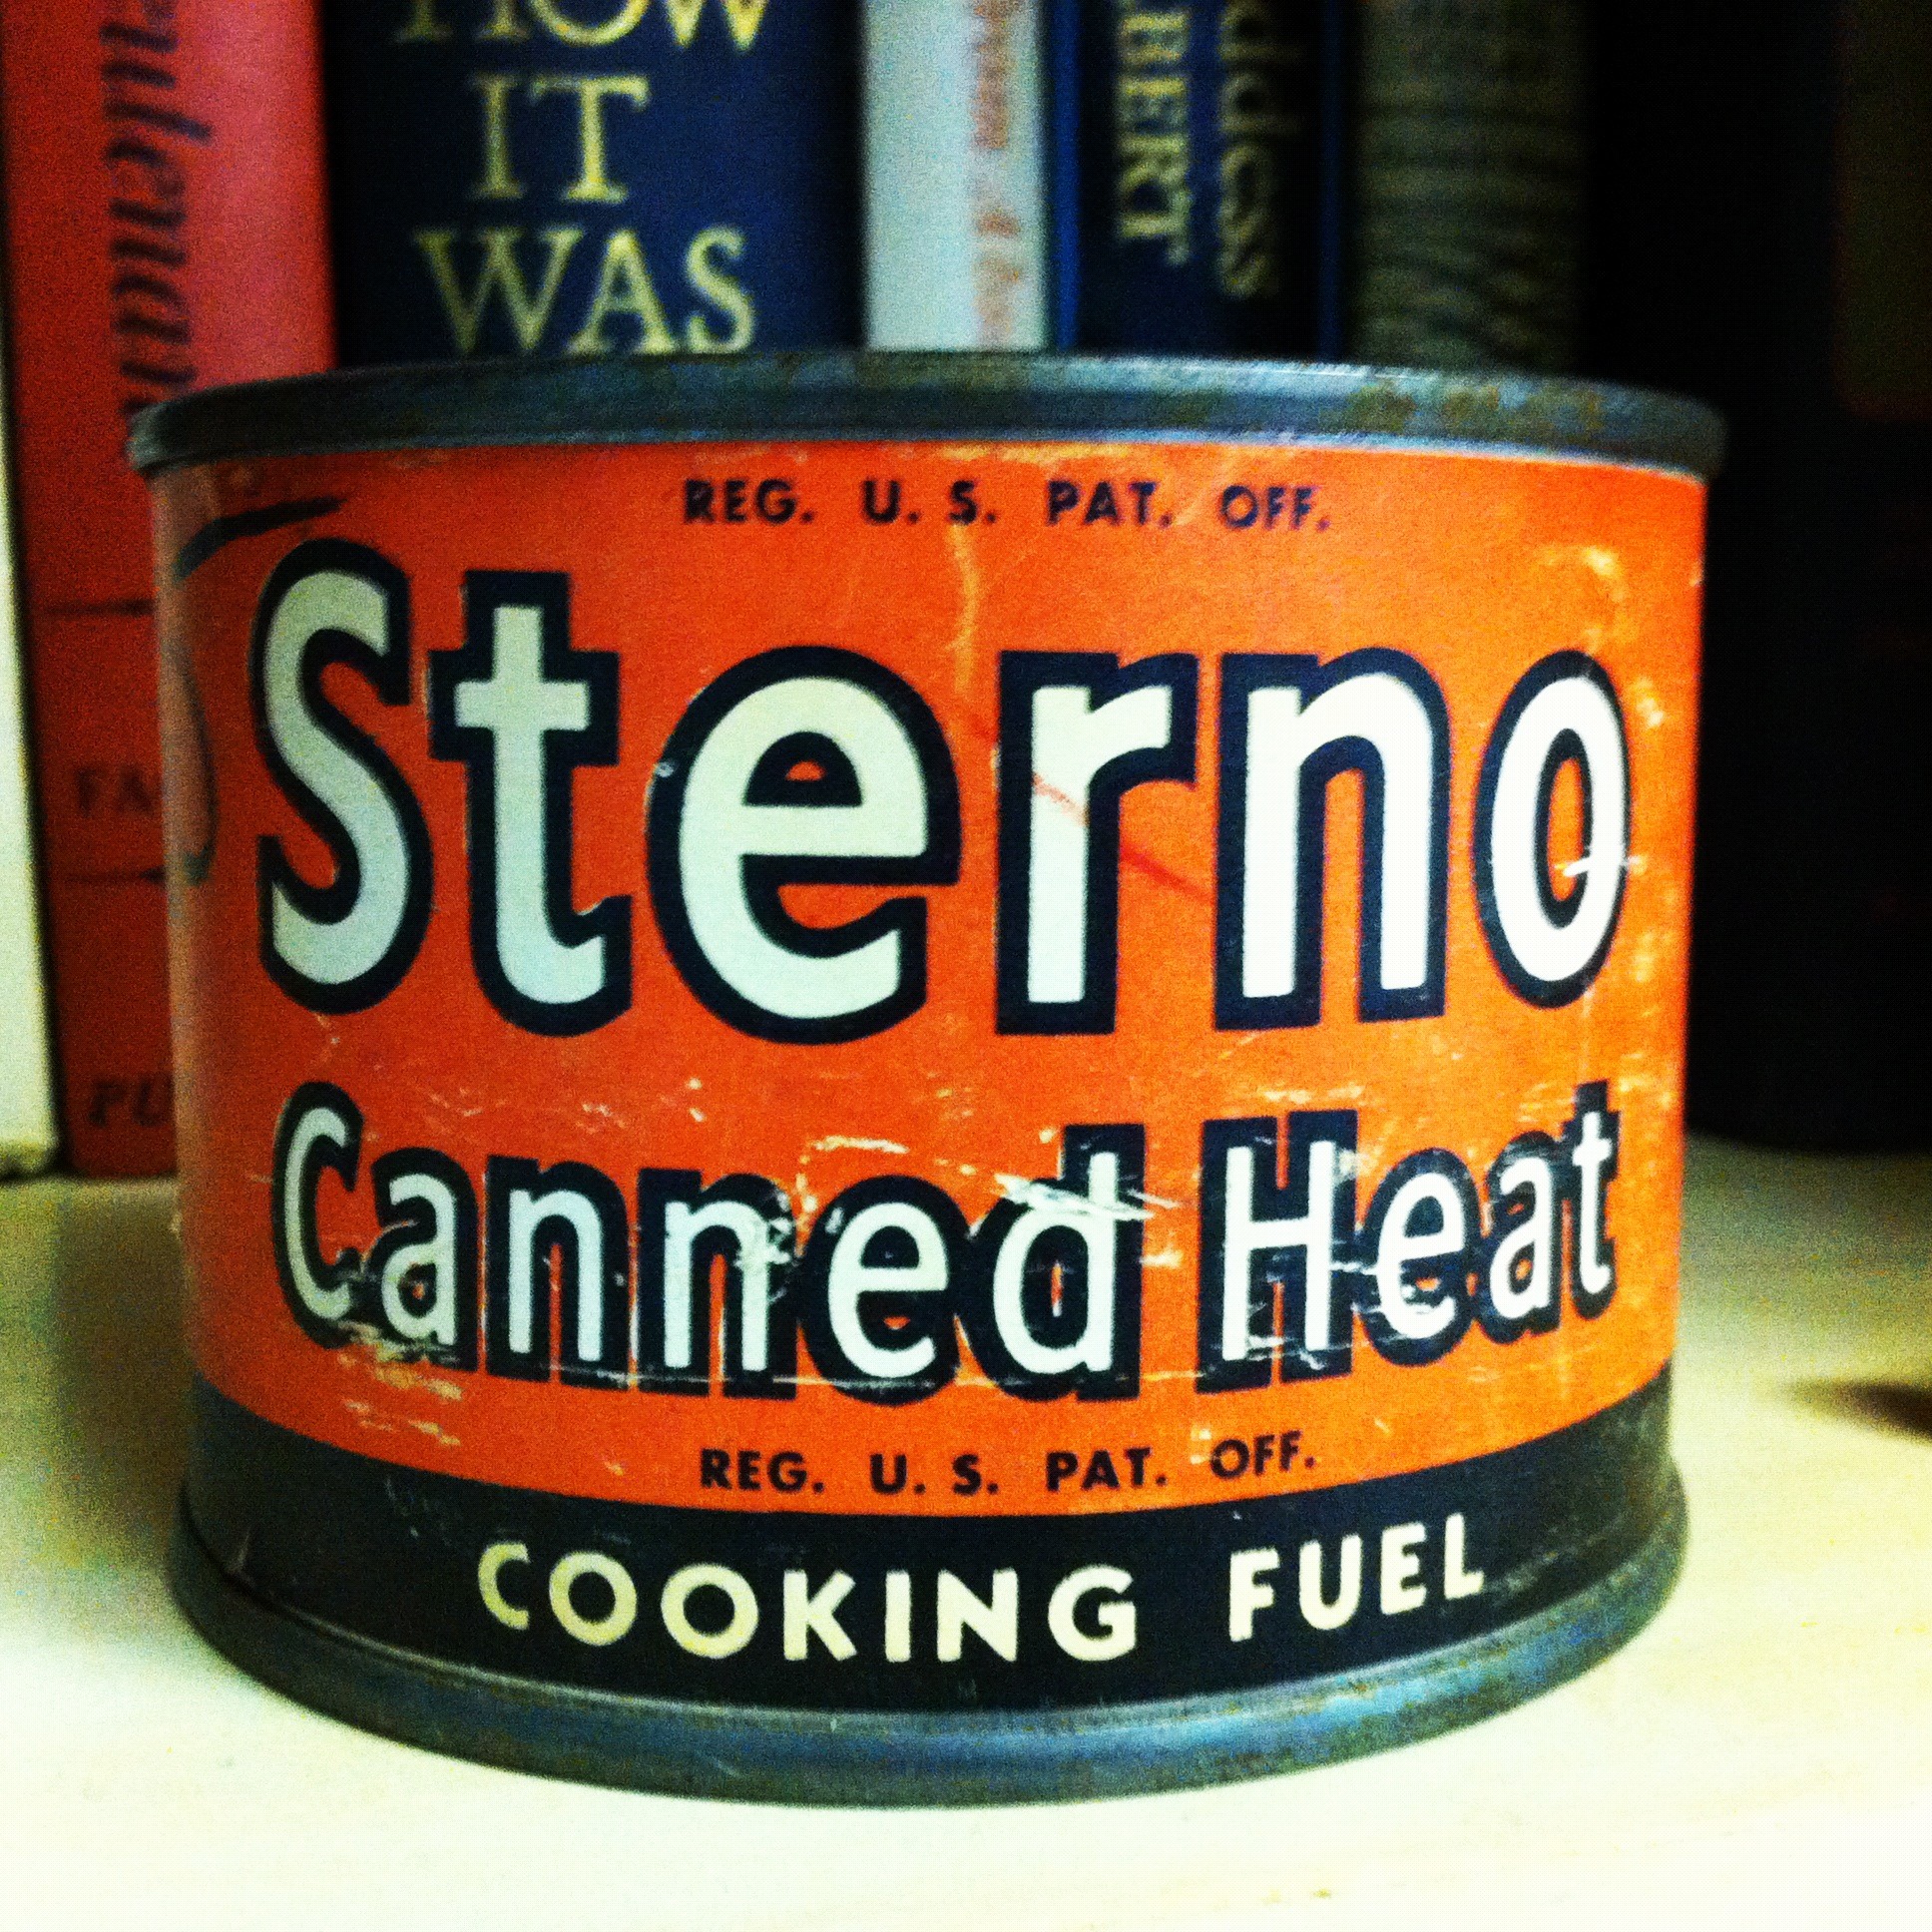 Canned-Heat.jpg